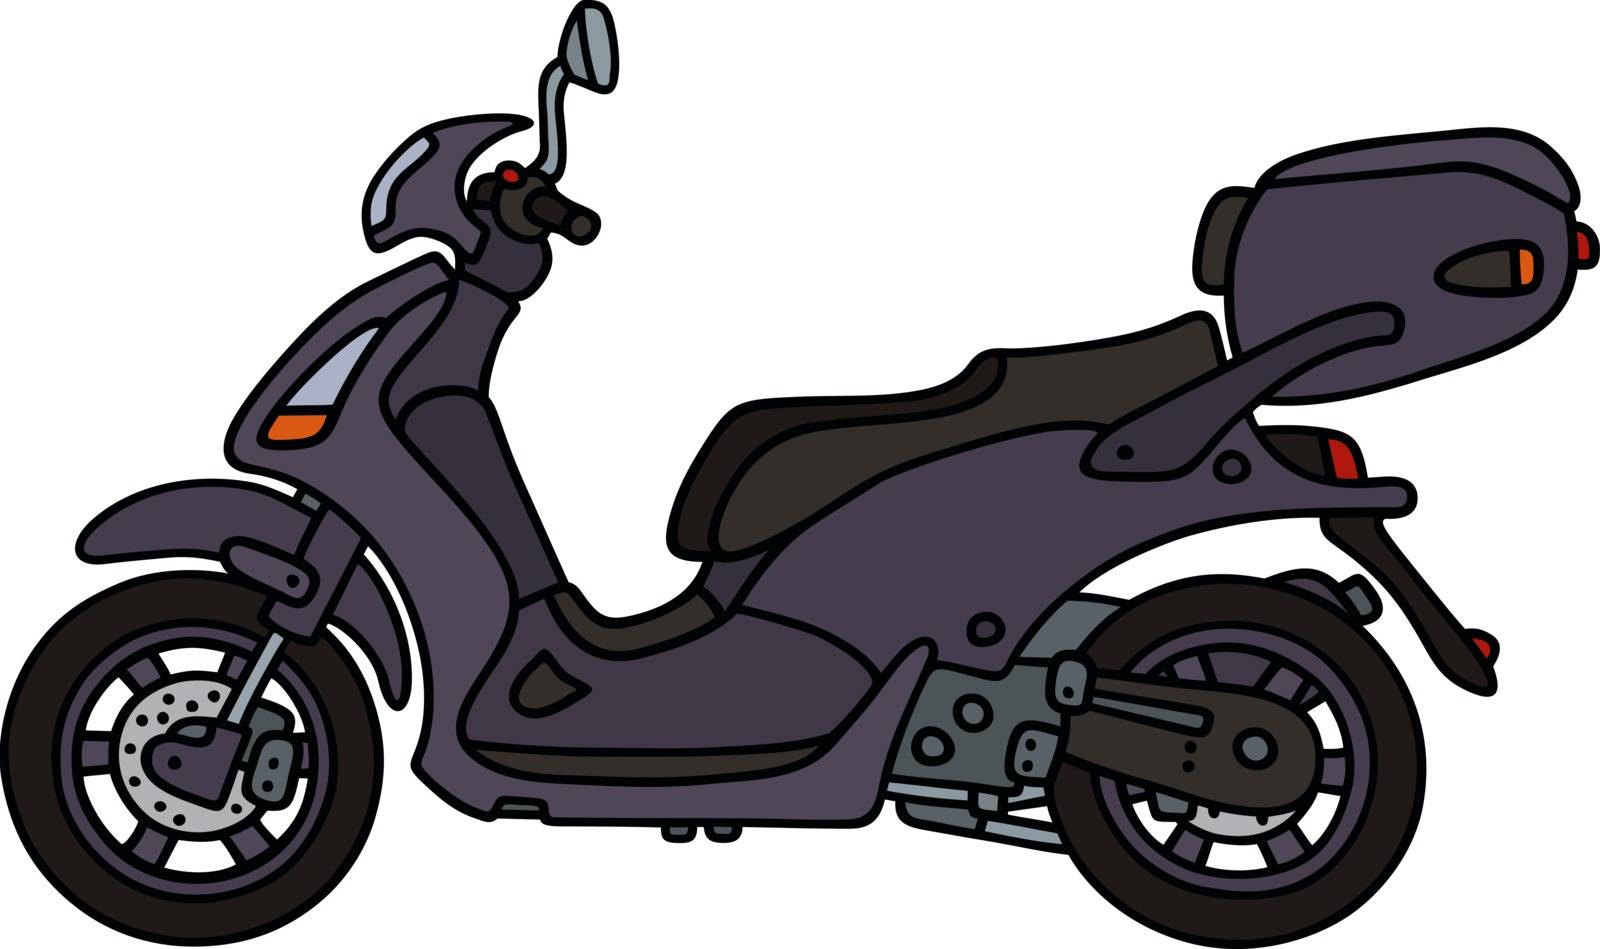 Dark scooter by vostal